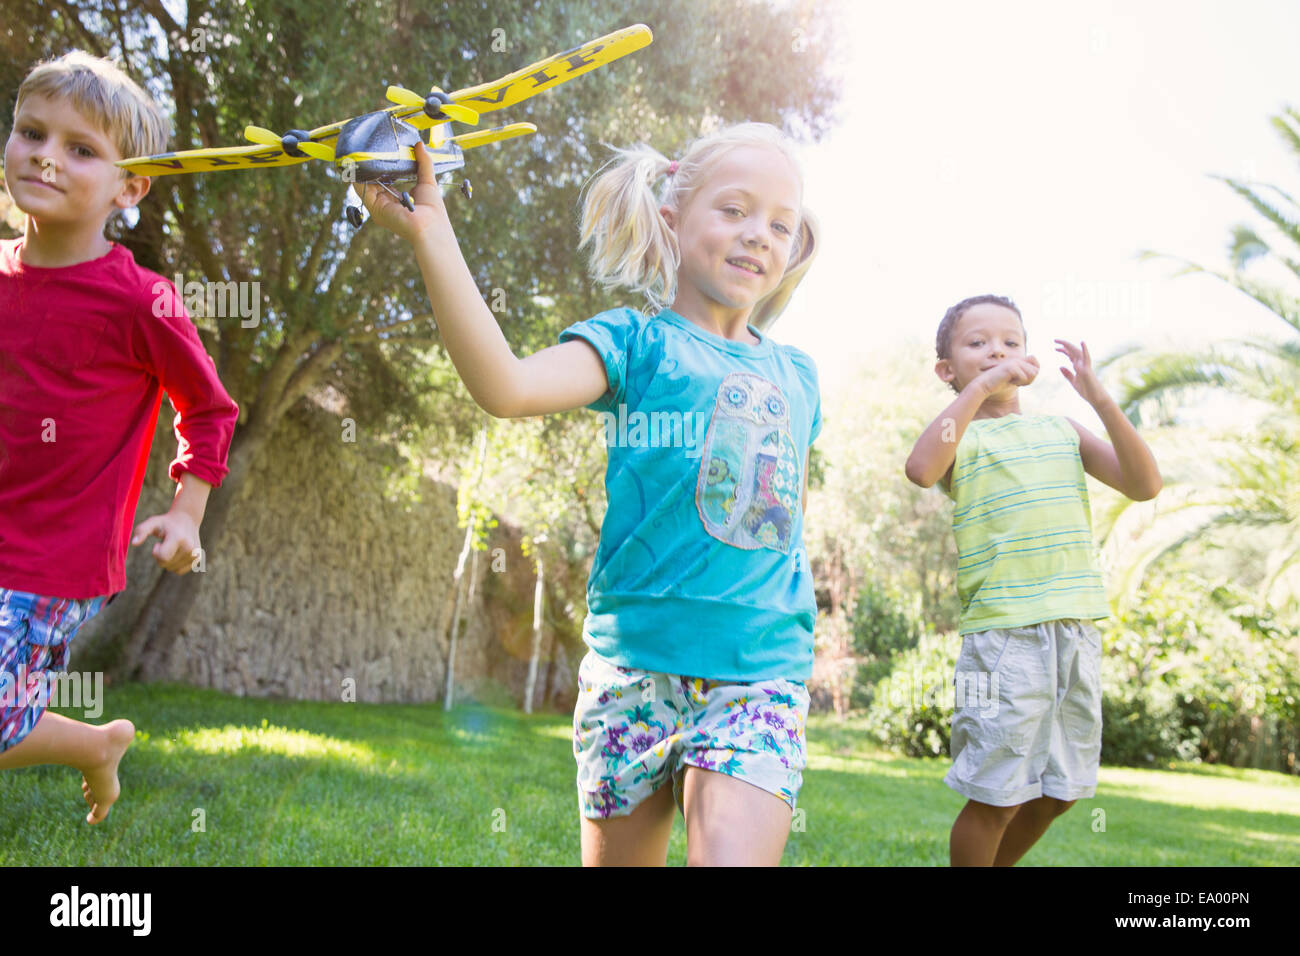 Drei Kinder im Garten laufen mit Spielzeugflugzeug Stockfoto